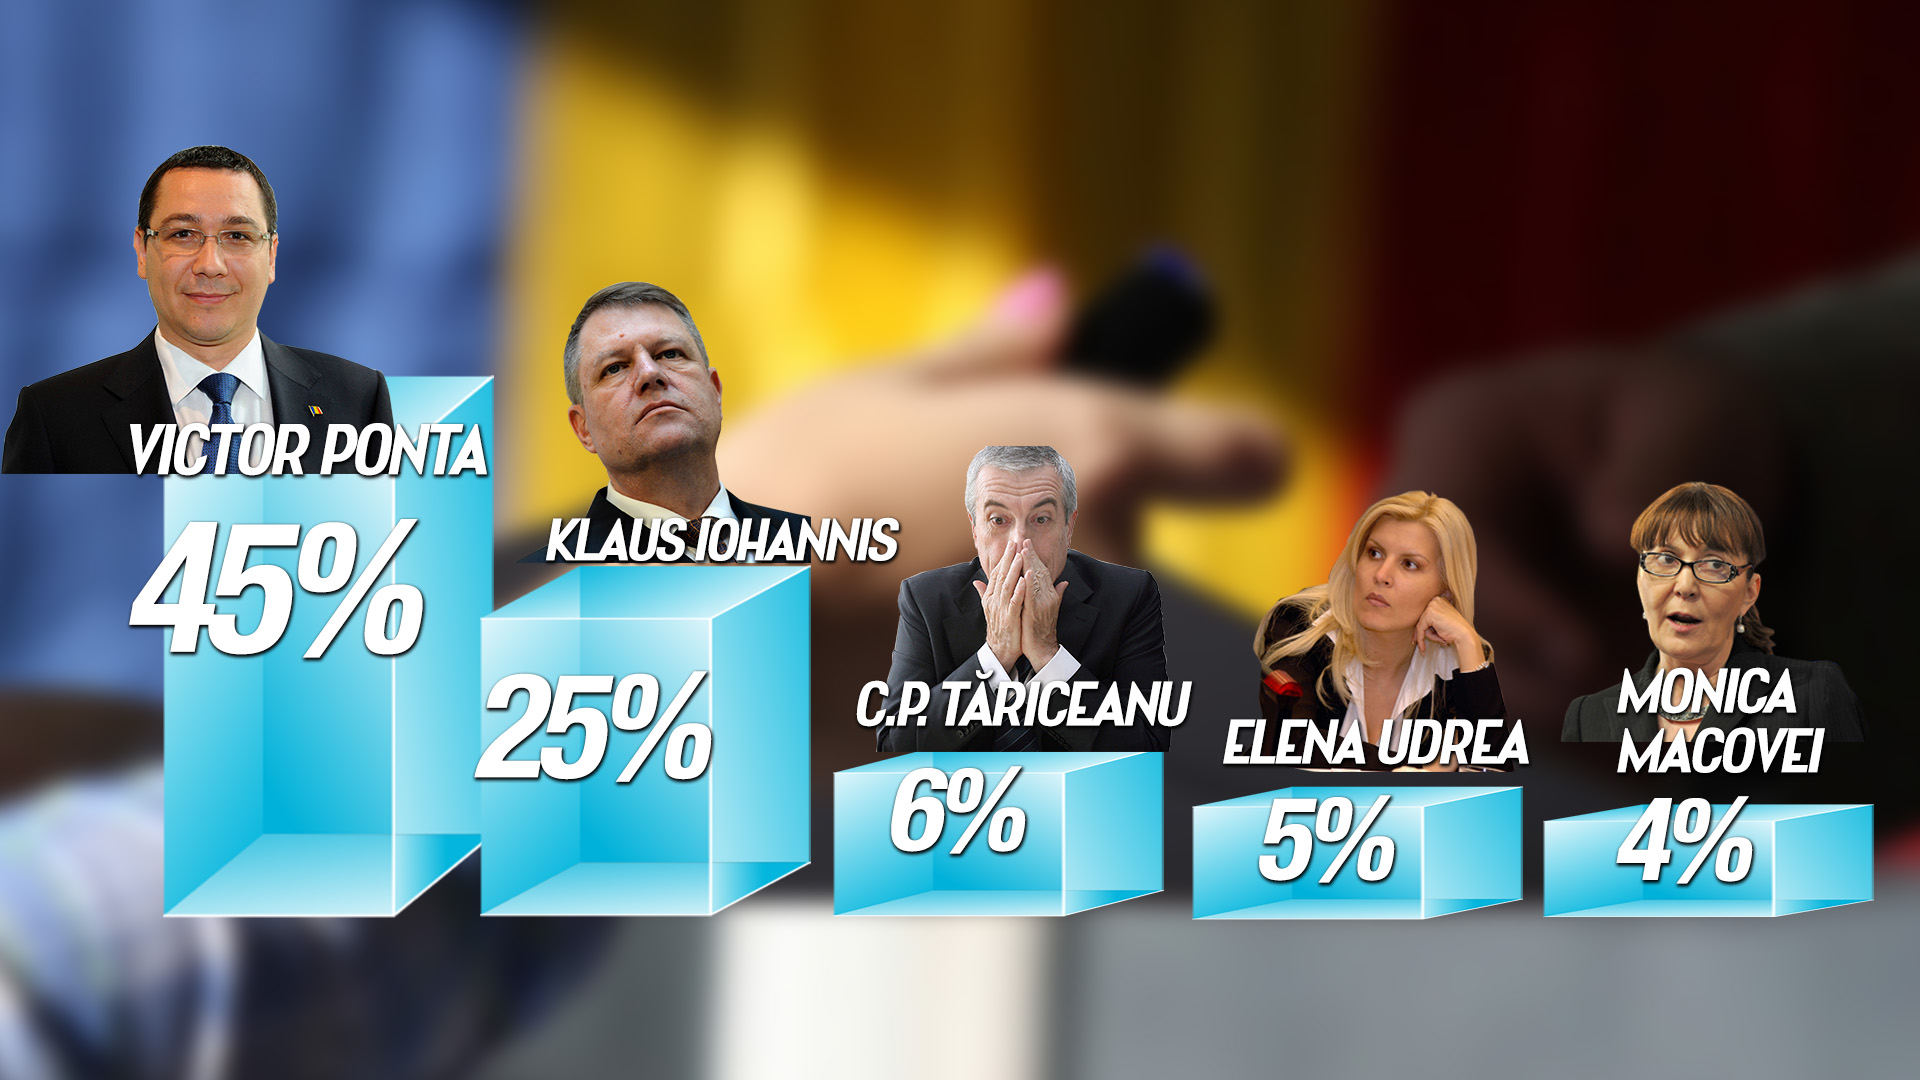 Rezultatele publicate de CANCAN.ro arata o diferenta de 20 de procente intre Victor Ponta si Klaus Iohannis